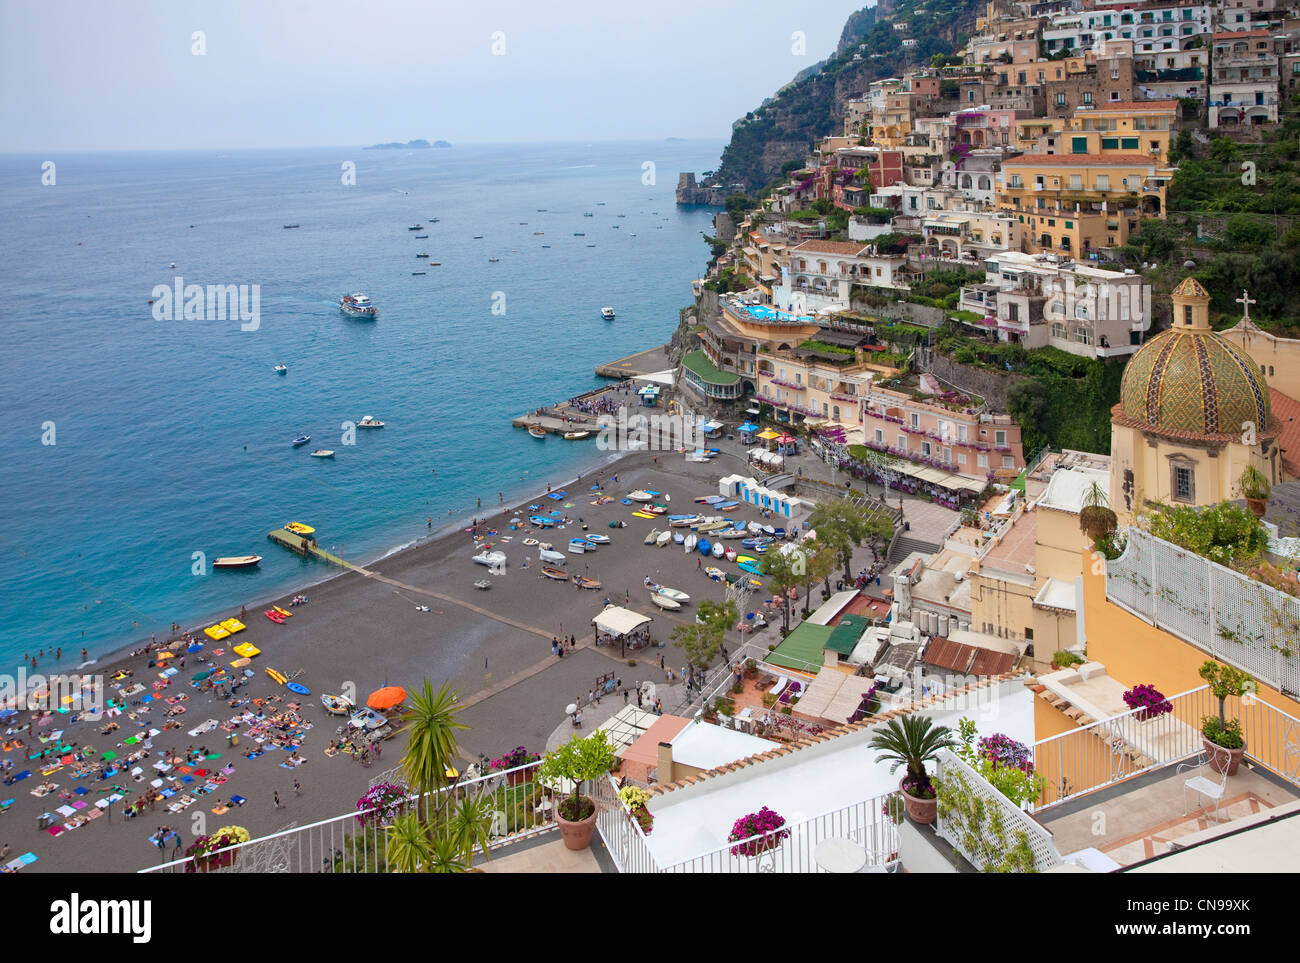 El pueblo de Positano, Amalfi, sitio del Patrimonio Mundial de la Unesco, la Región de Campania, Italia, el mar Mediterráneo, Europa Foto de stock